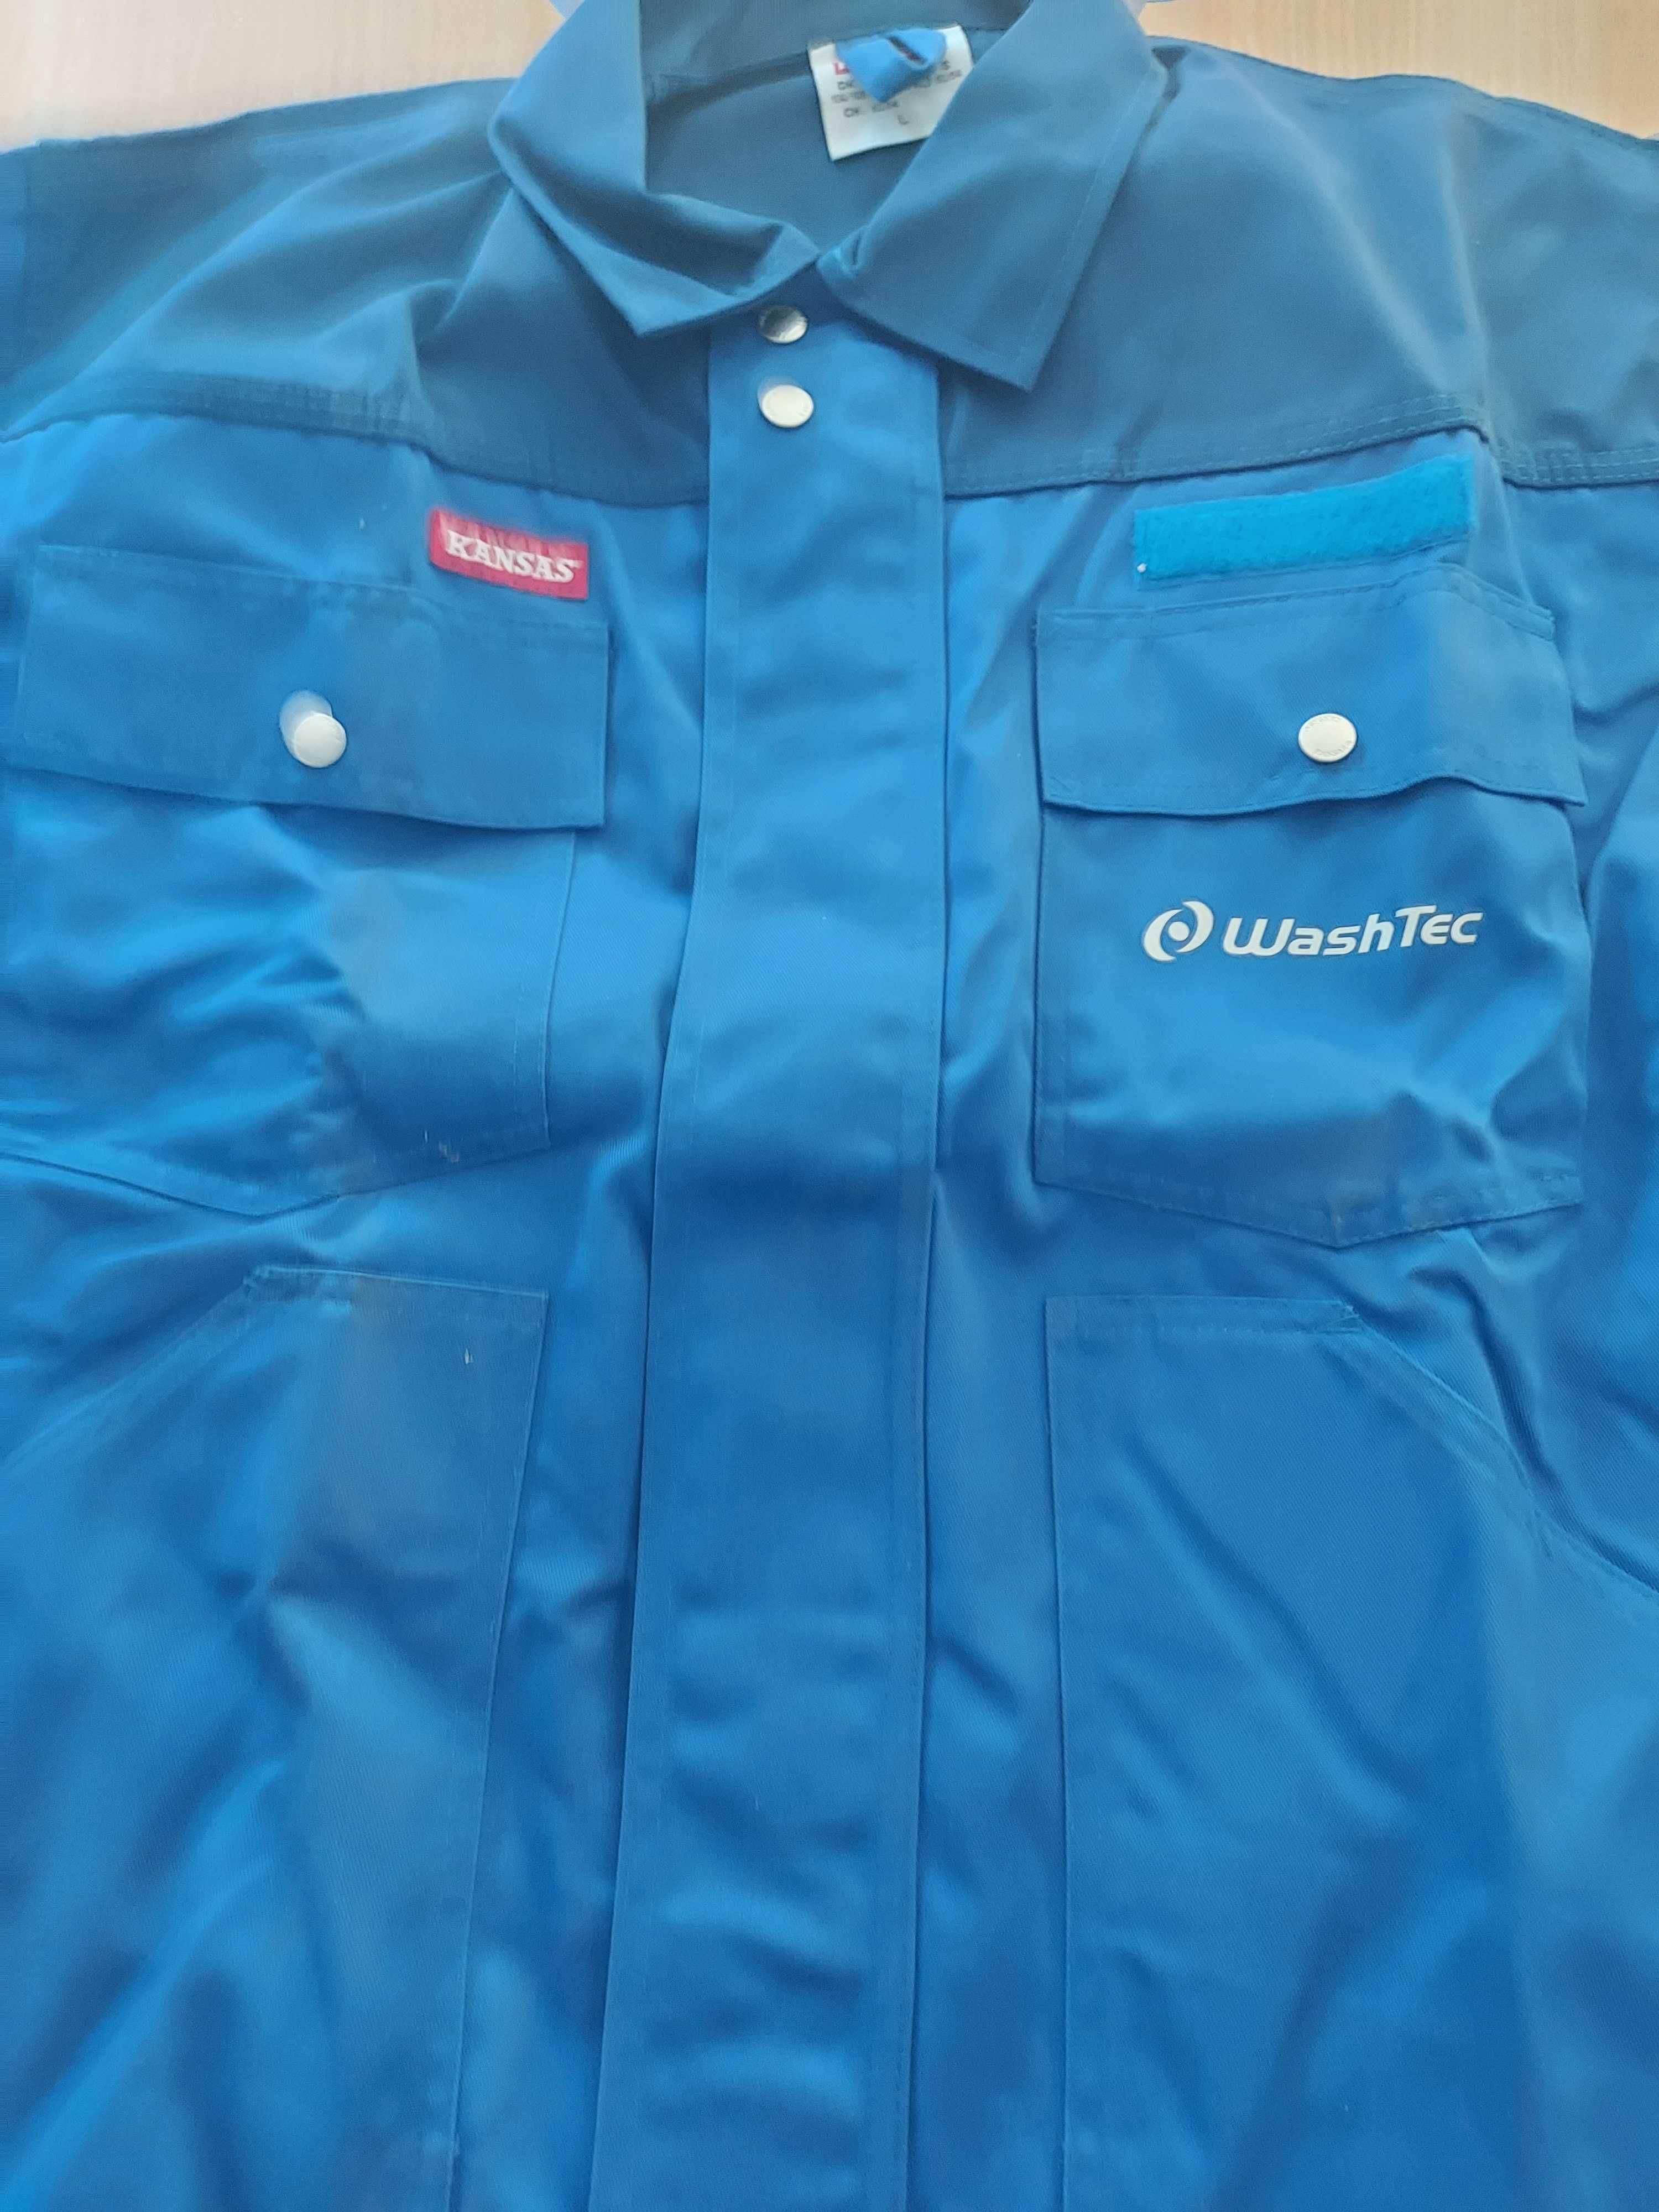 Mocna markowa bluza robocza firmy Kansas rozmiar L